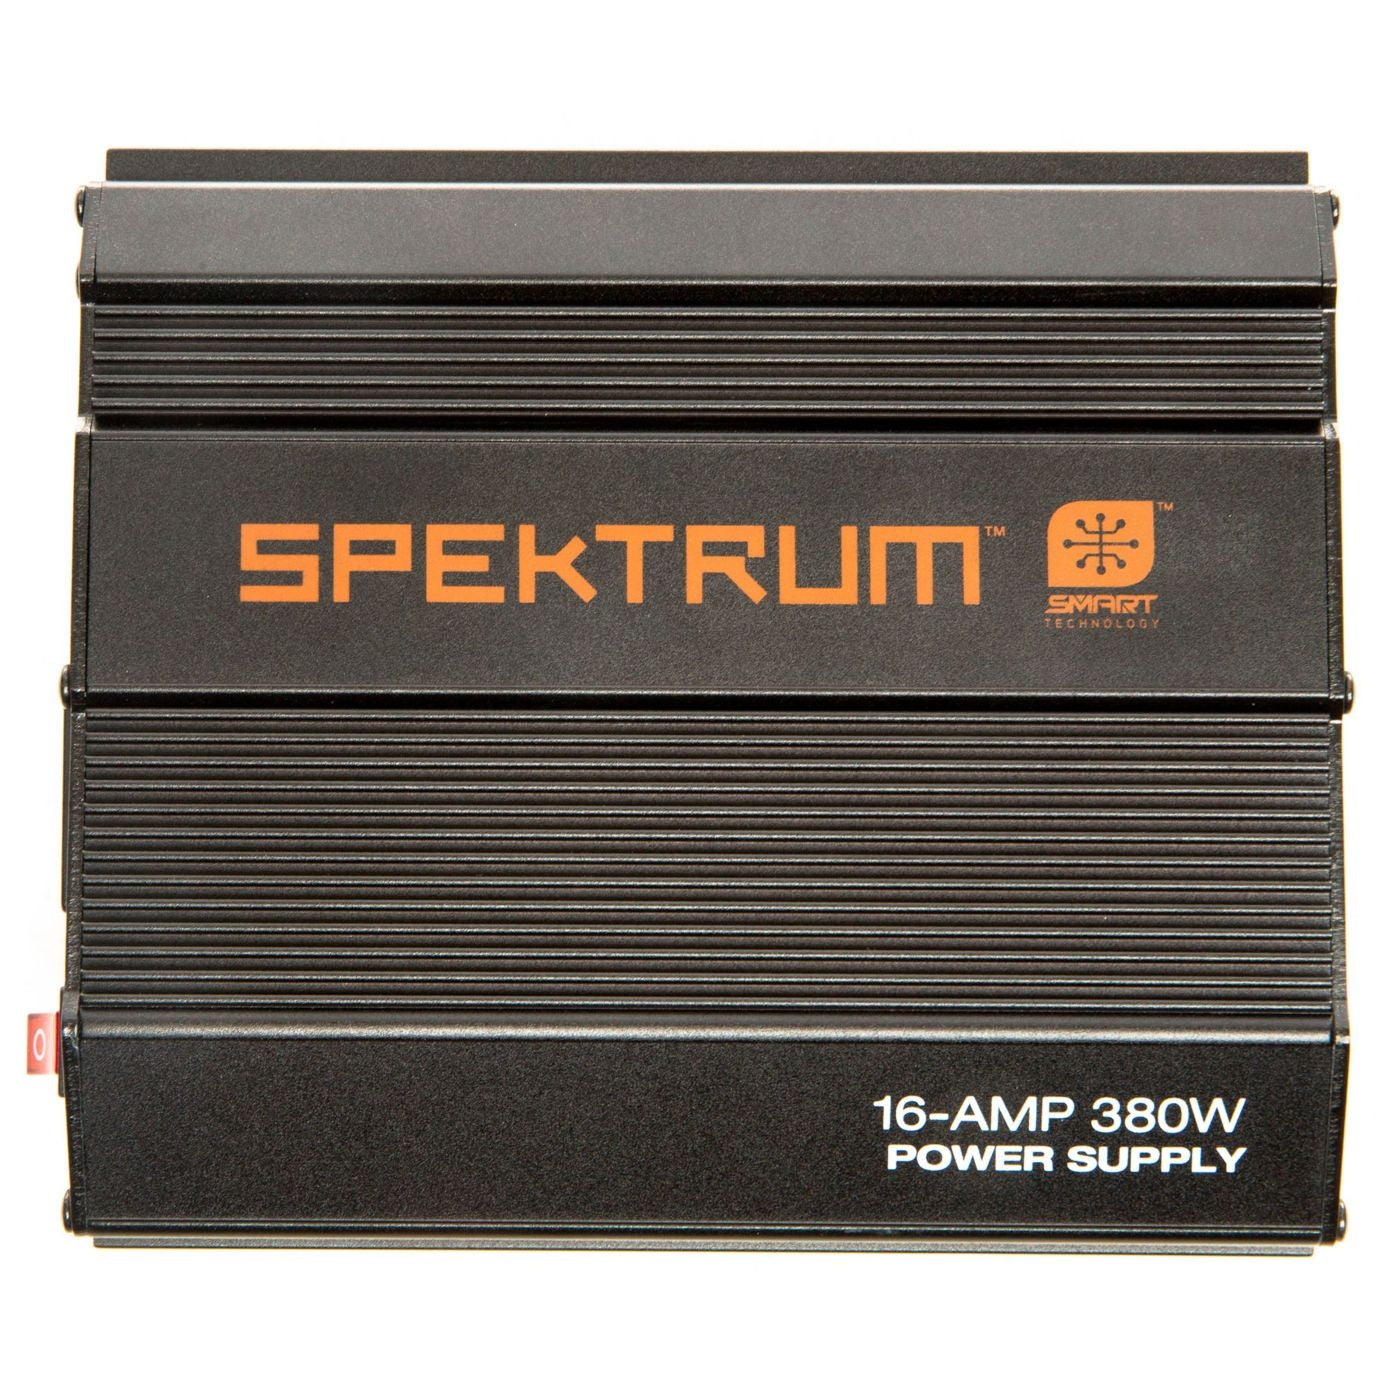 Spektrum 16A 380W Power Supply SPMXC10202I